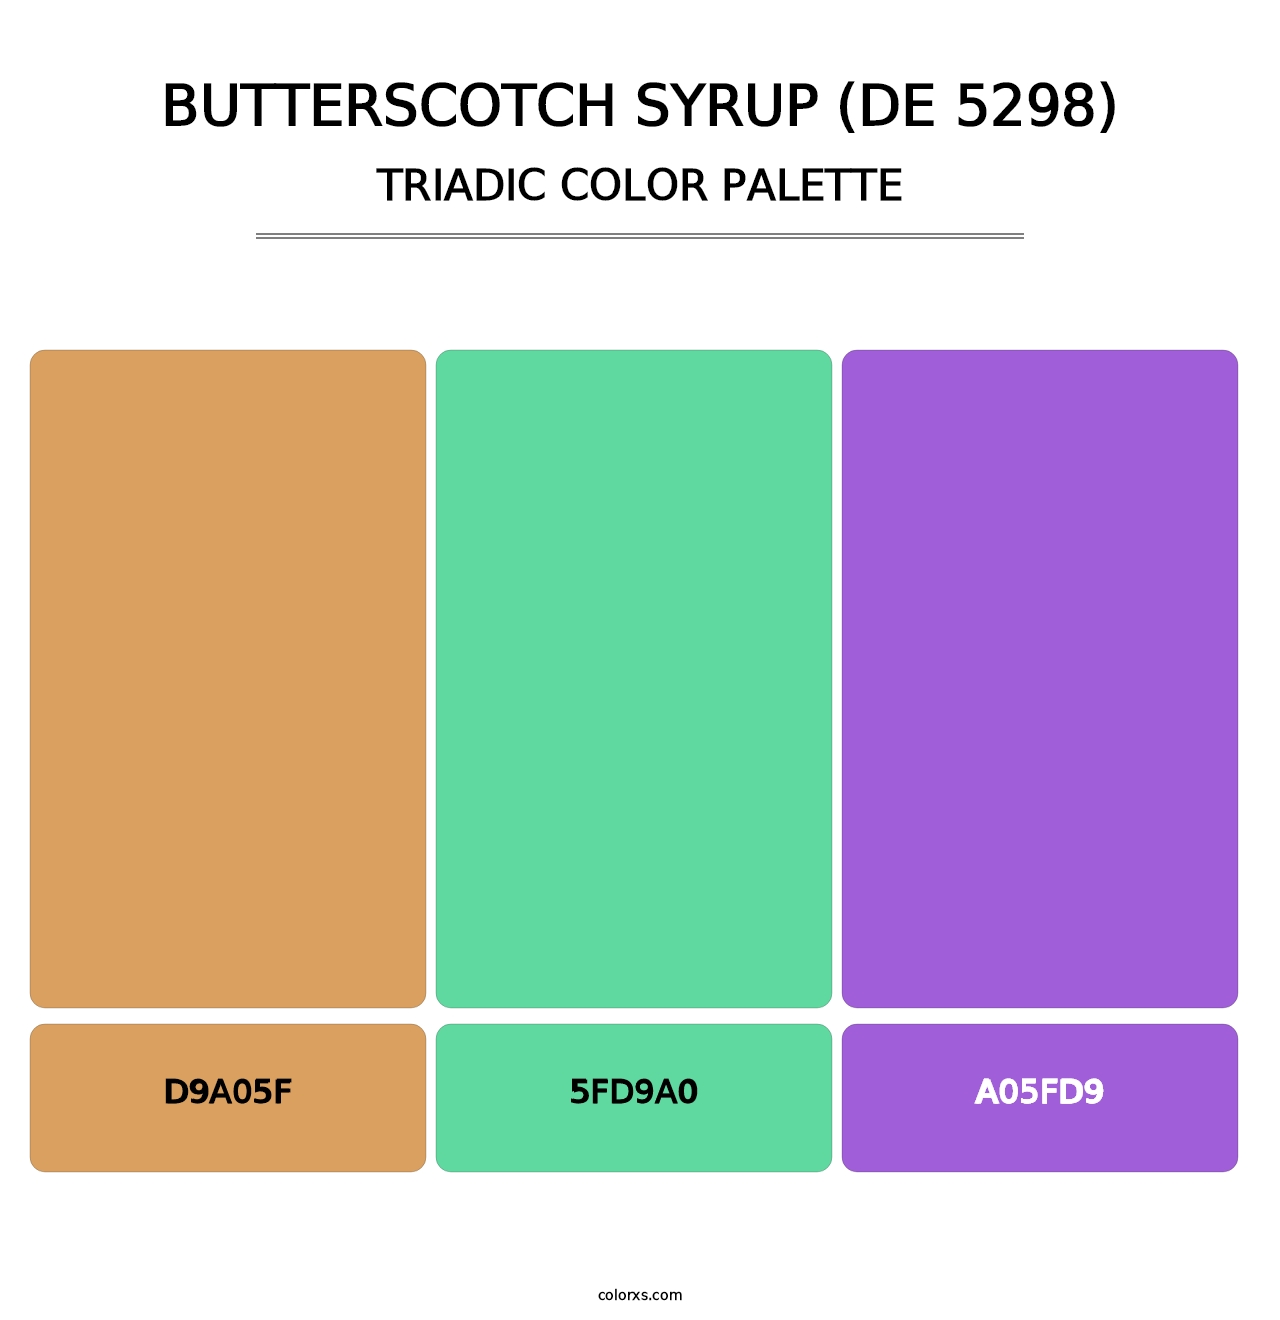 Butterscotch Syrup (DE 5298) - Triadic Color Palette